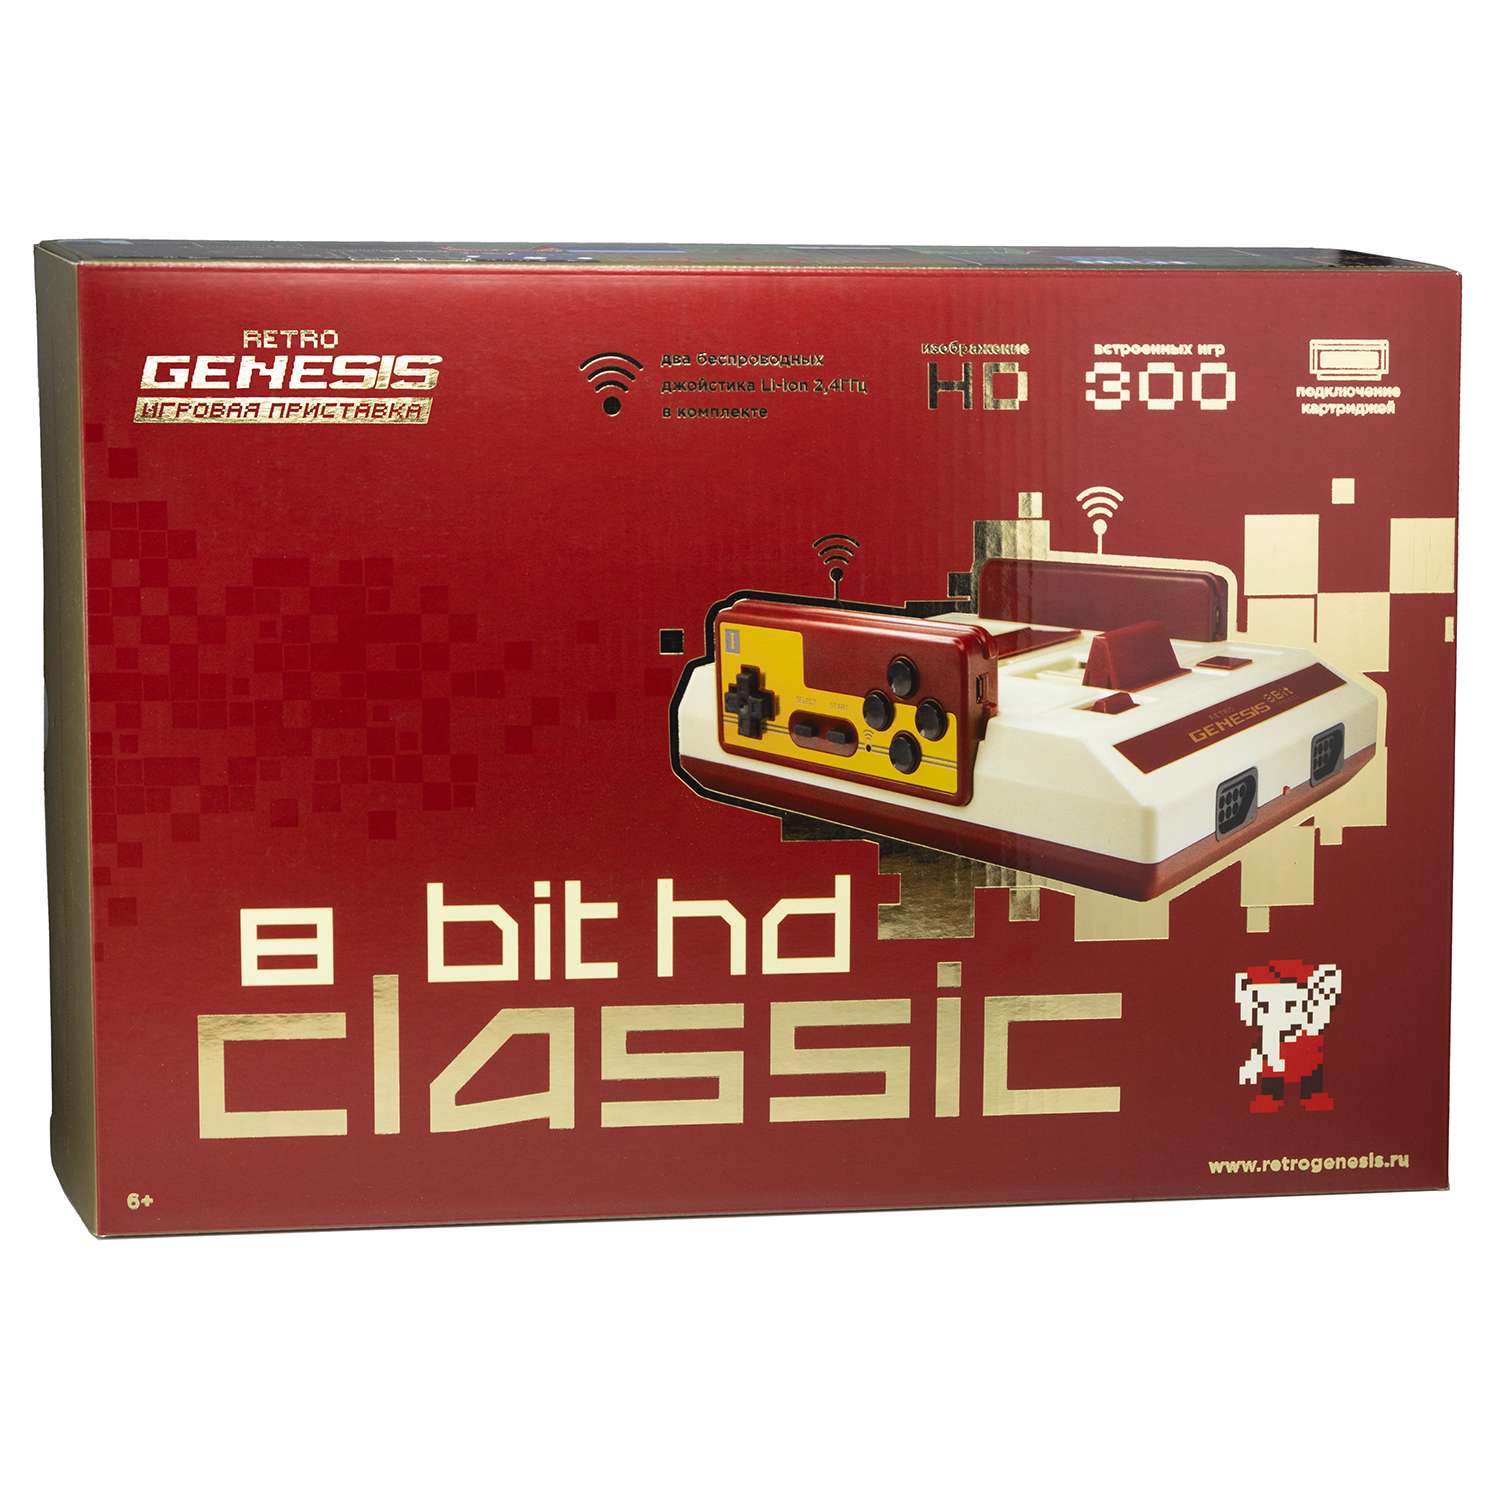 Игровая приставка для детей Retro Genesis 8 Bit HD Classic + 300 игр 2 бесп.джойстика - фото 2